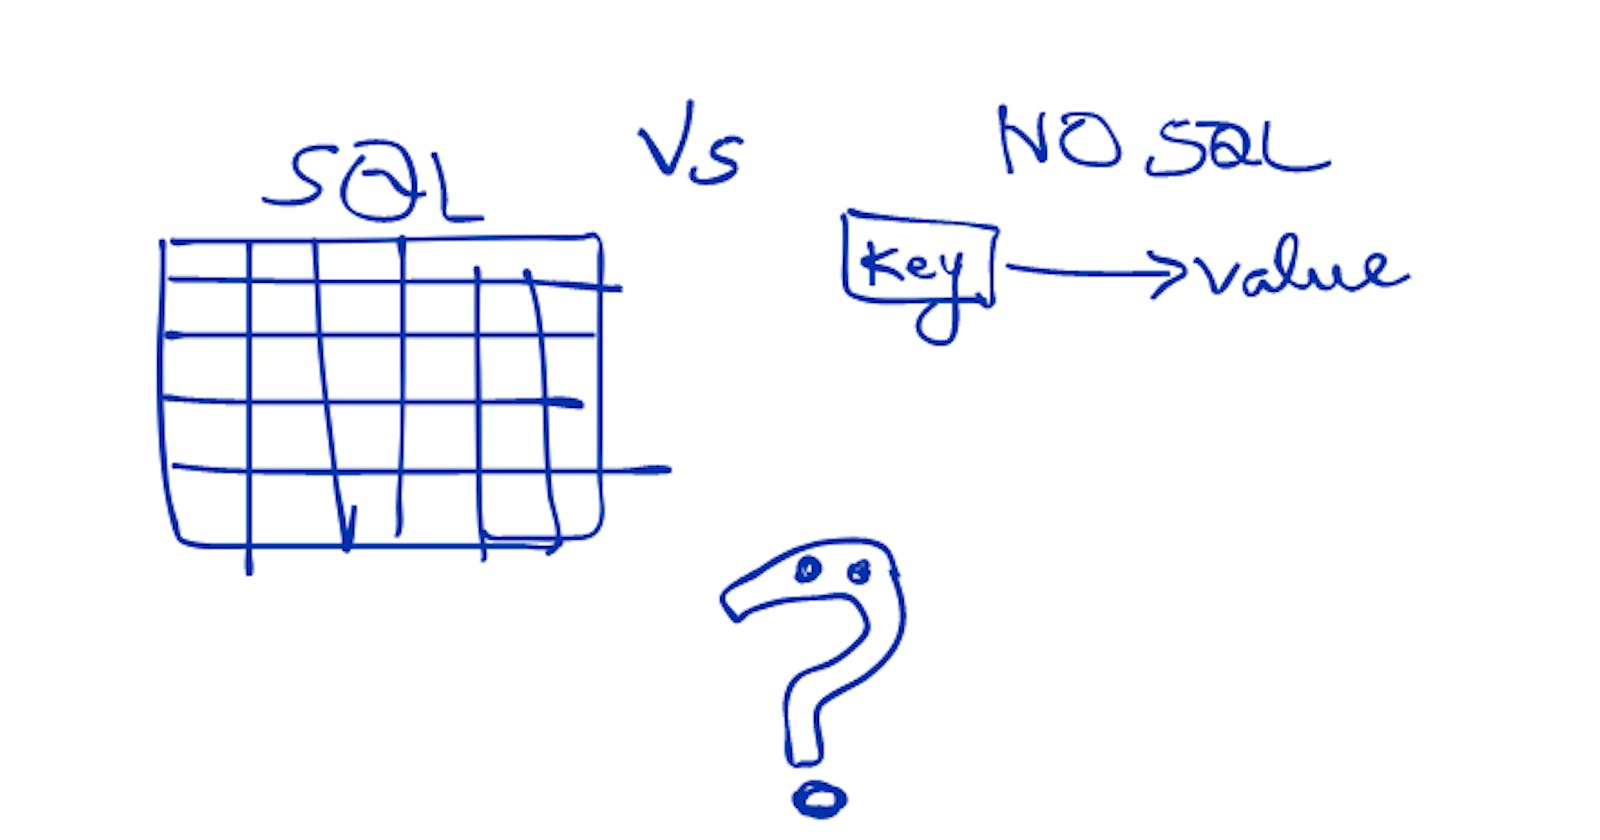 #7 System Design: SQL Vs NO SQL